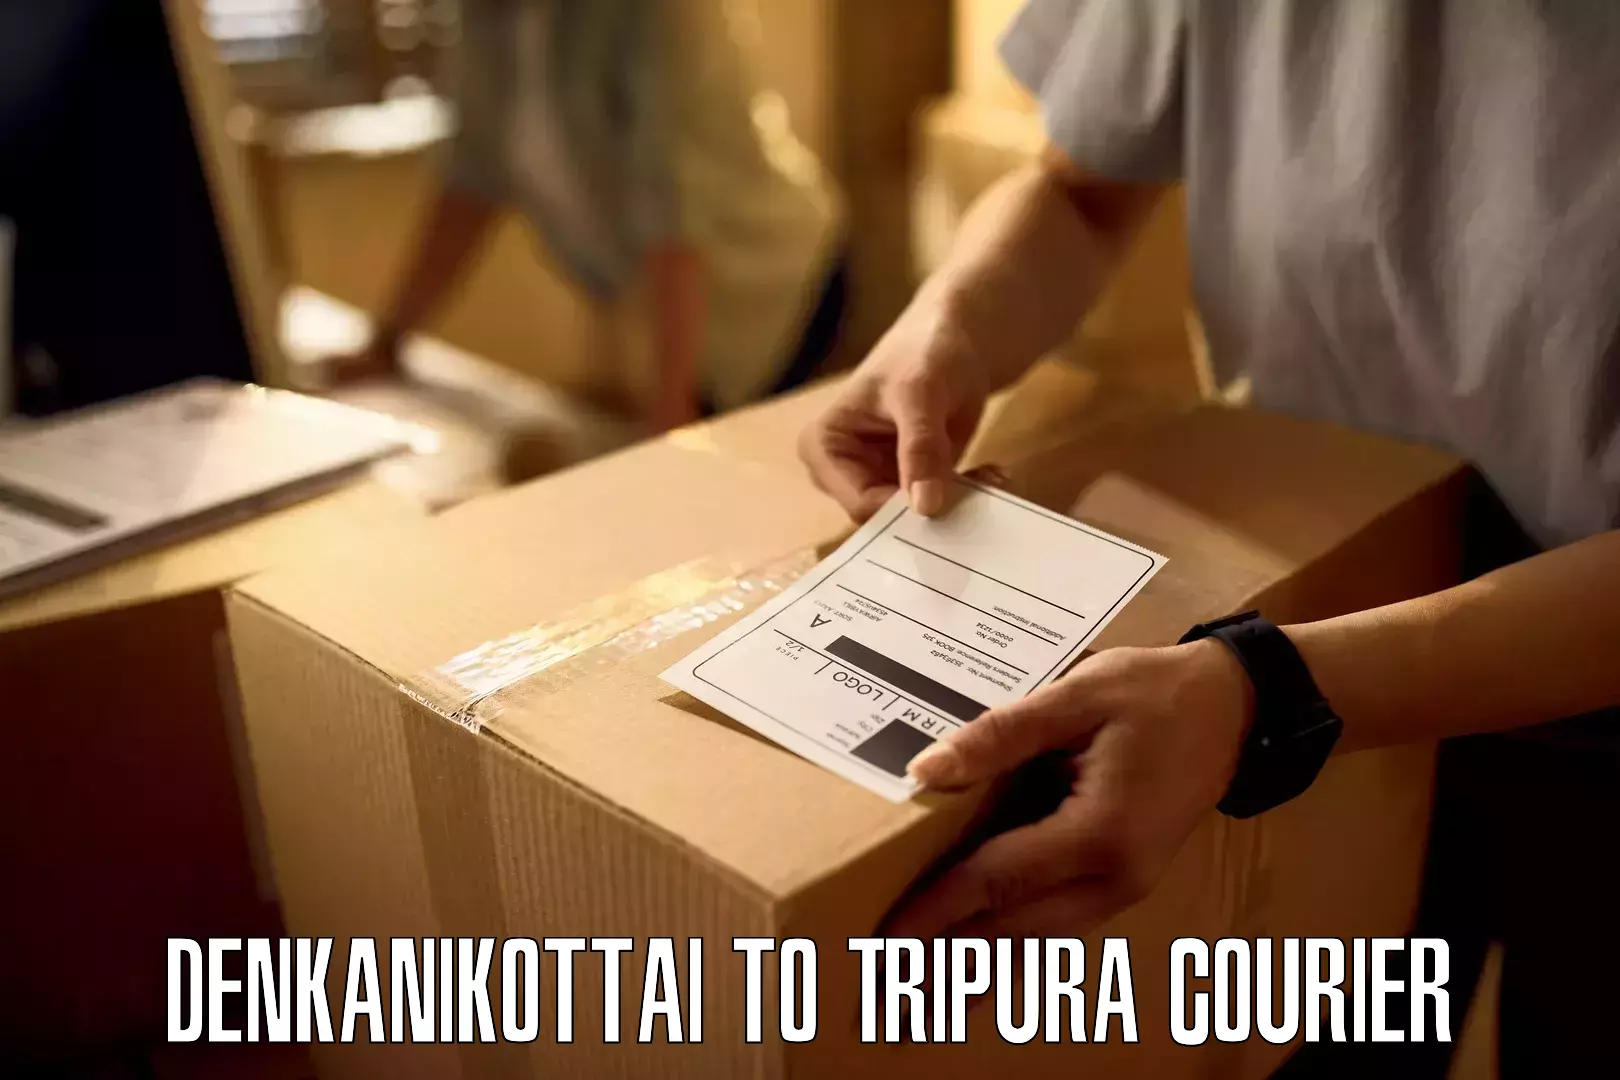 Round-the-clock parcel delivery Denkanikottai to IIIT Agartala